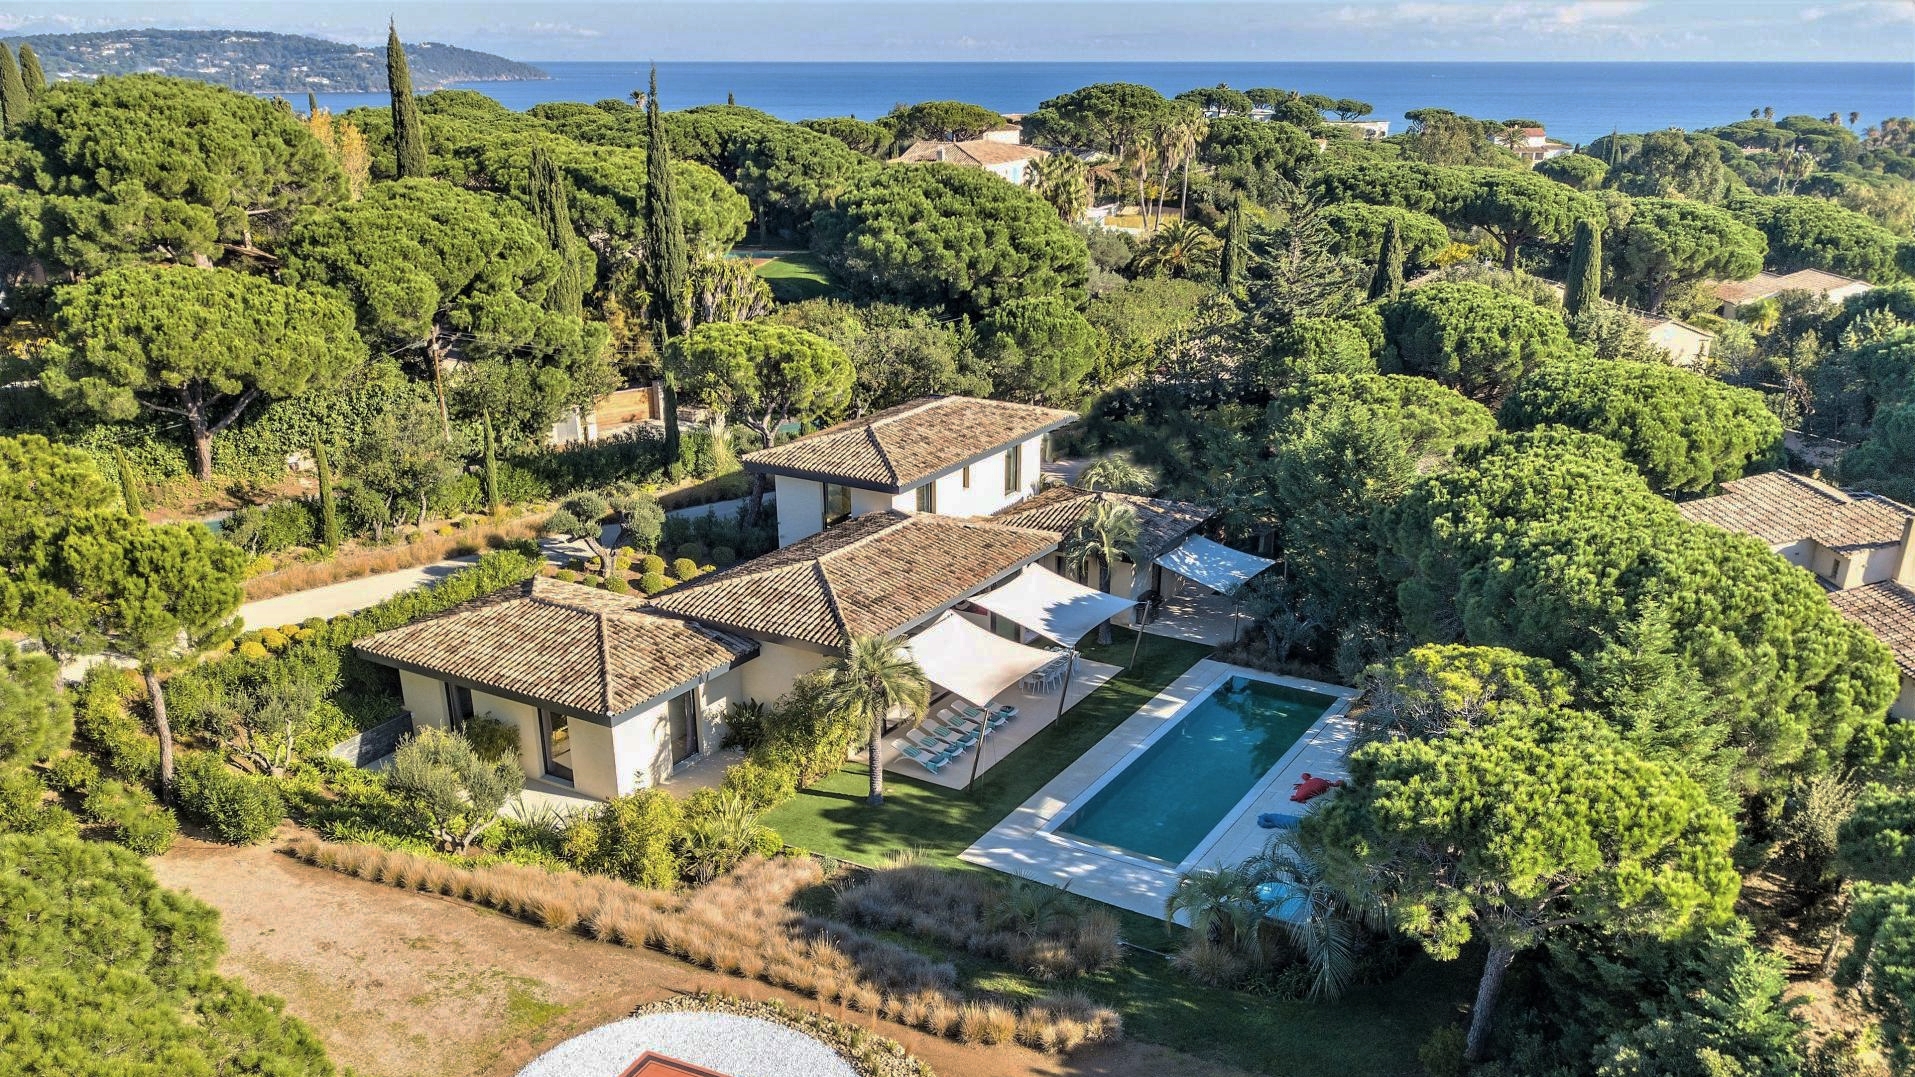 Luxury Villa Rentals St. Tropez inbetween the trees